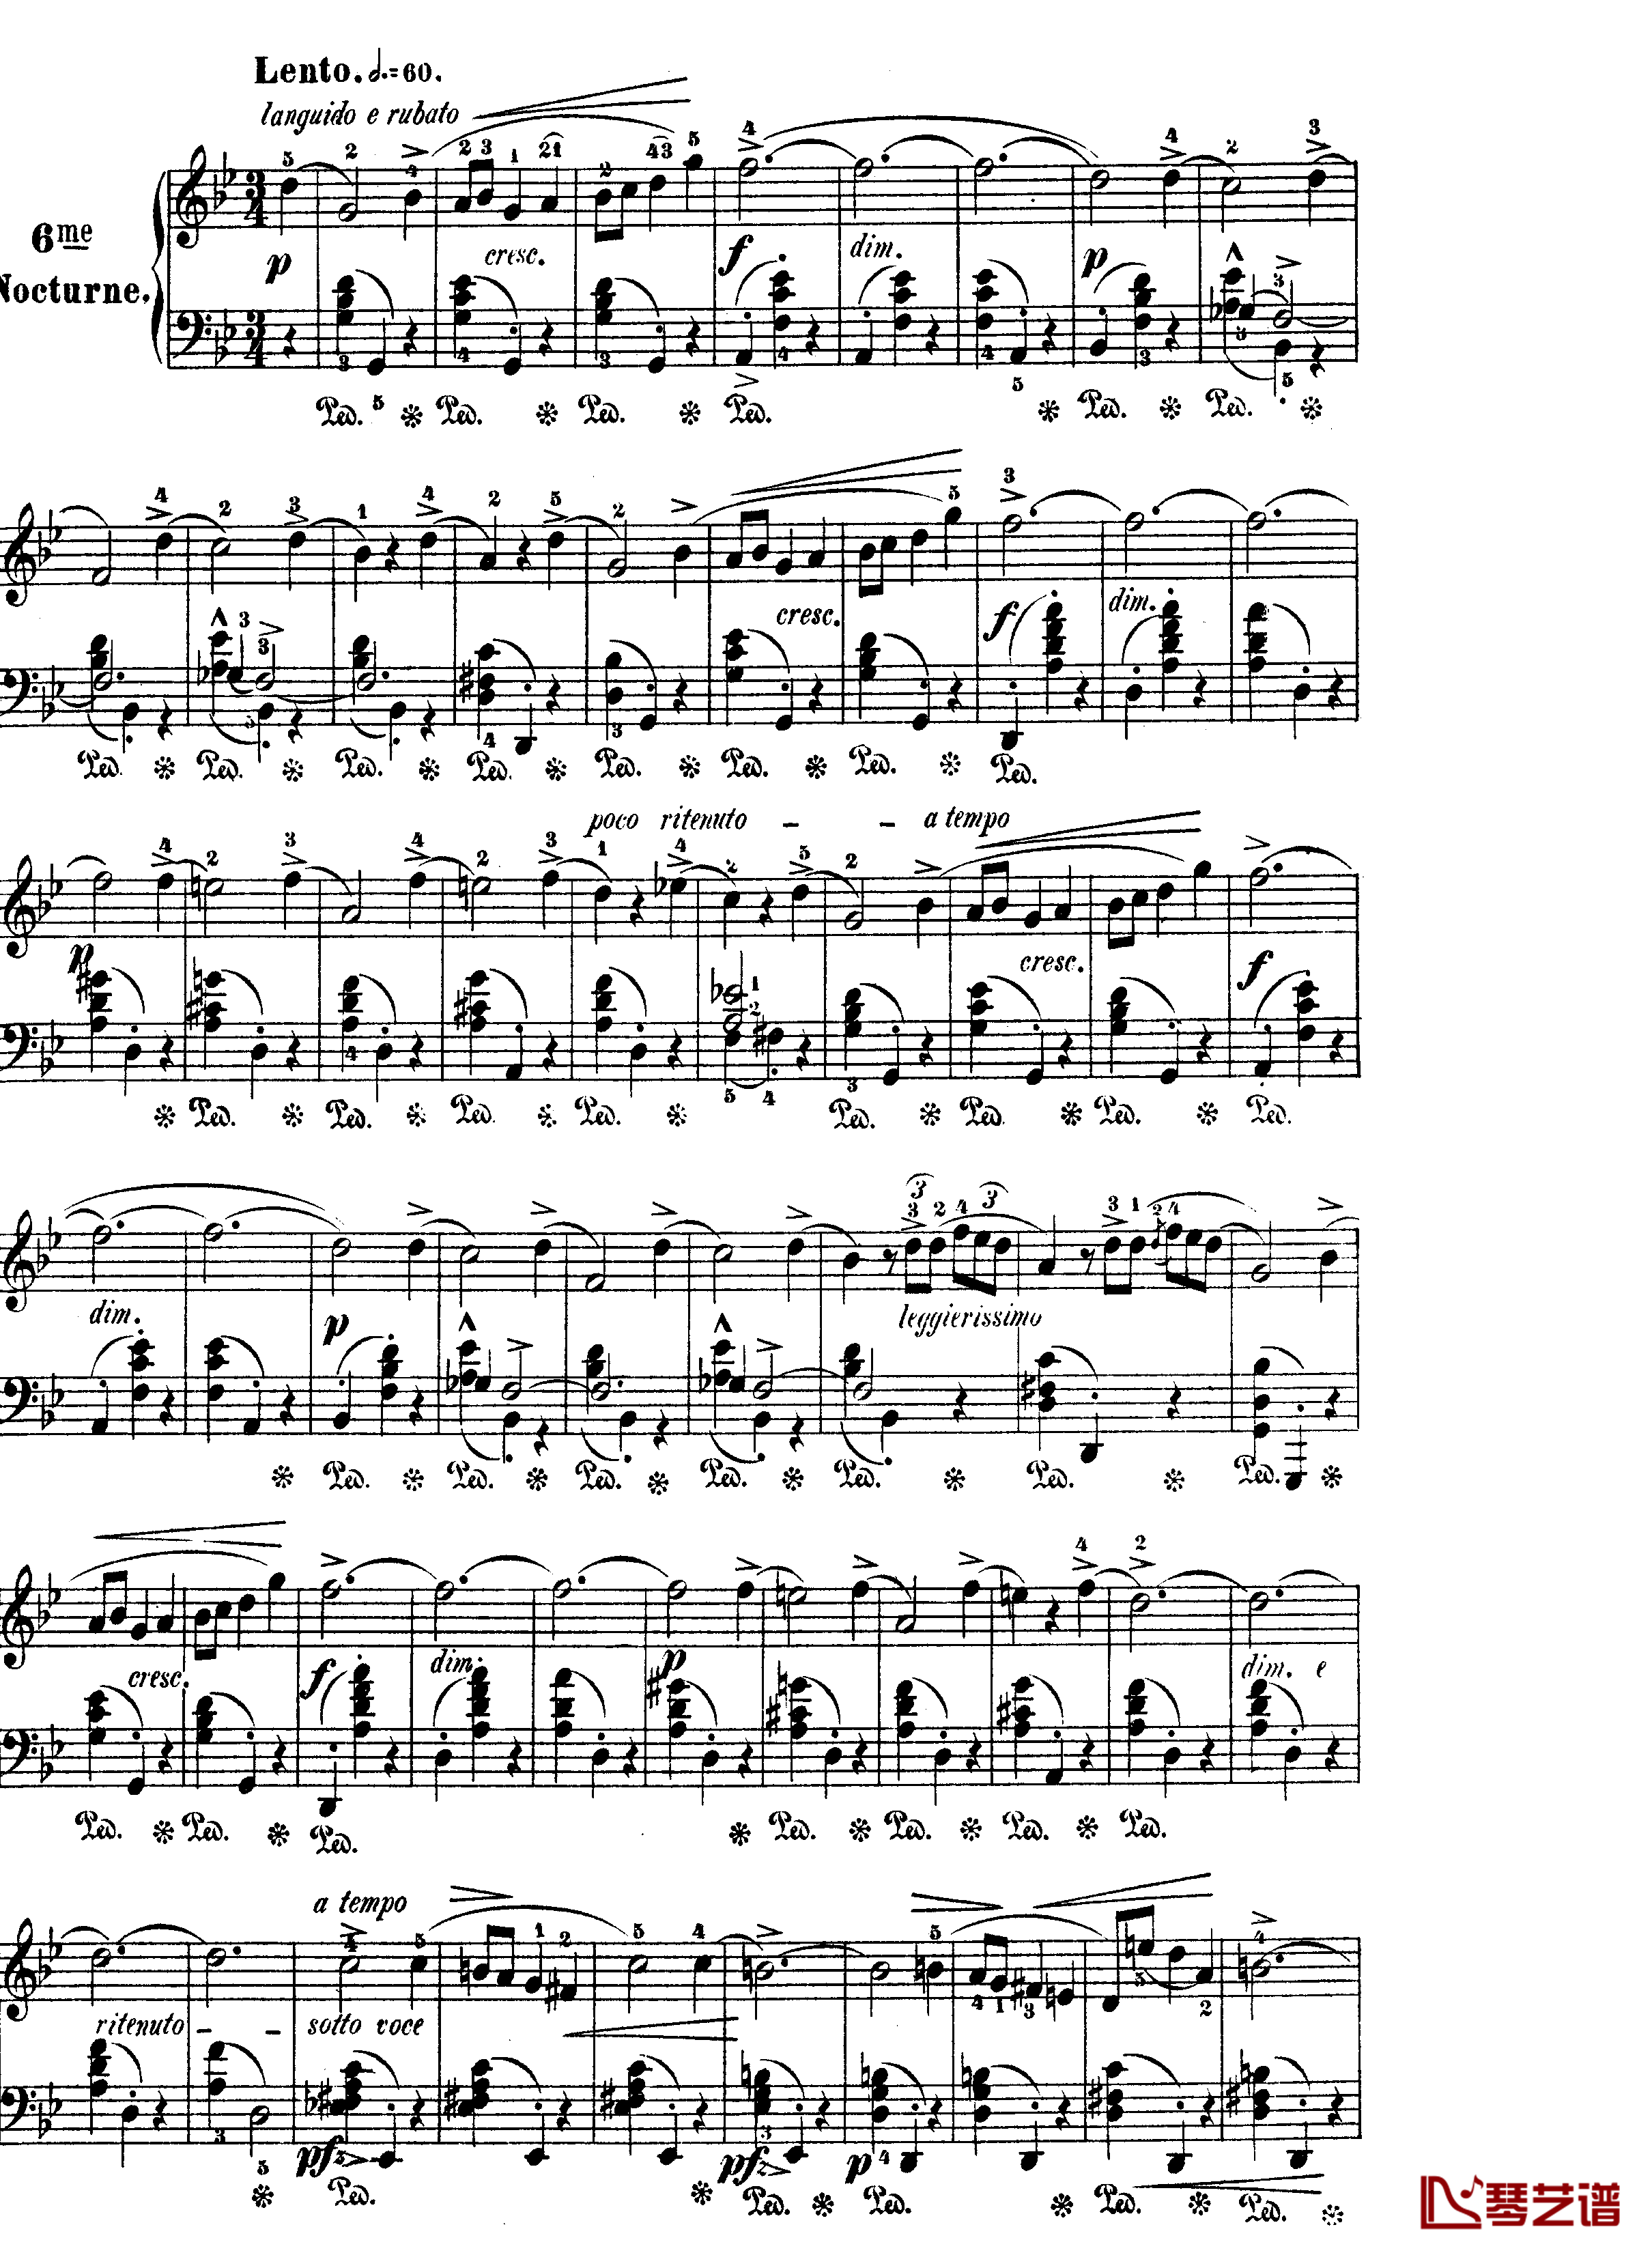 升F大调夜曲作品15号钢琴谱-Nocturne Op.15 No.3-肖邦-chopin